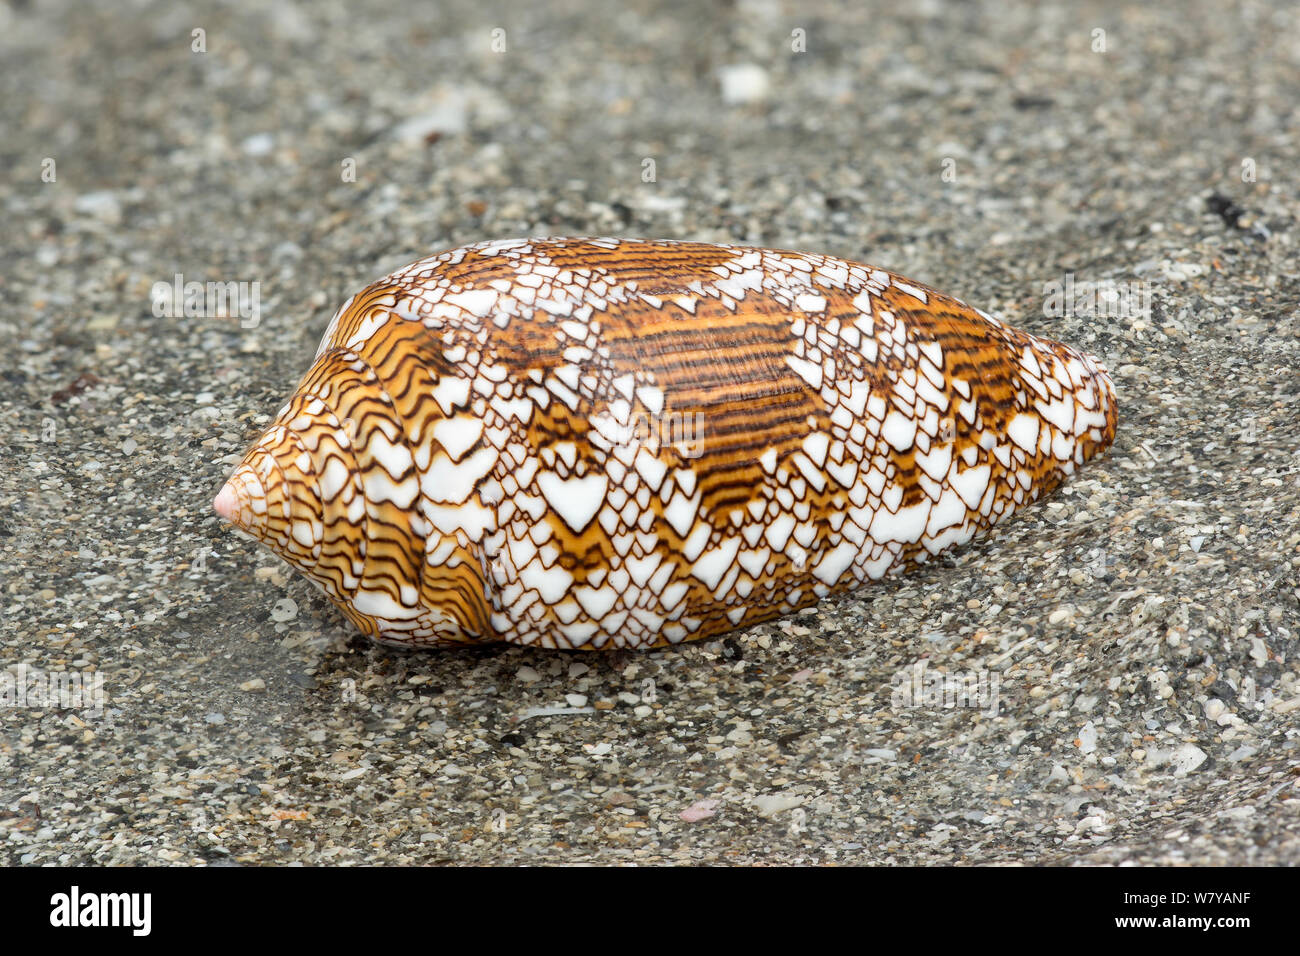 Cône Textile shell (Conus textile) sur la plage, une espèce venimeuse, Bornéo. Banque D'Images